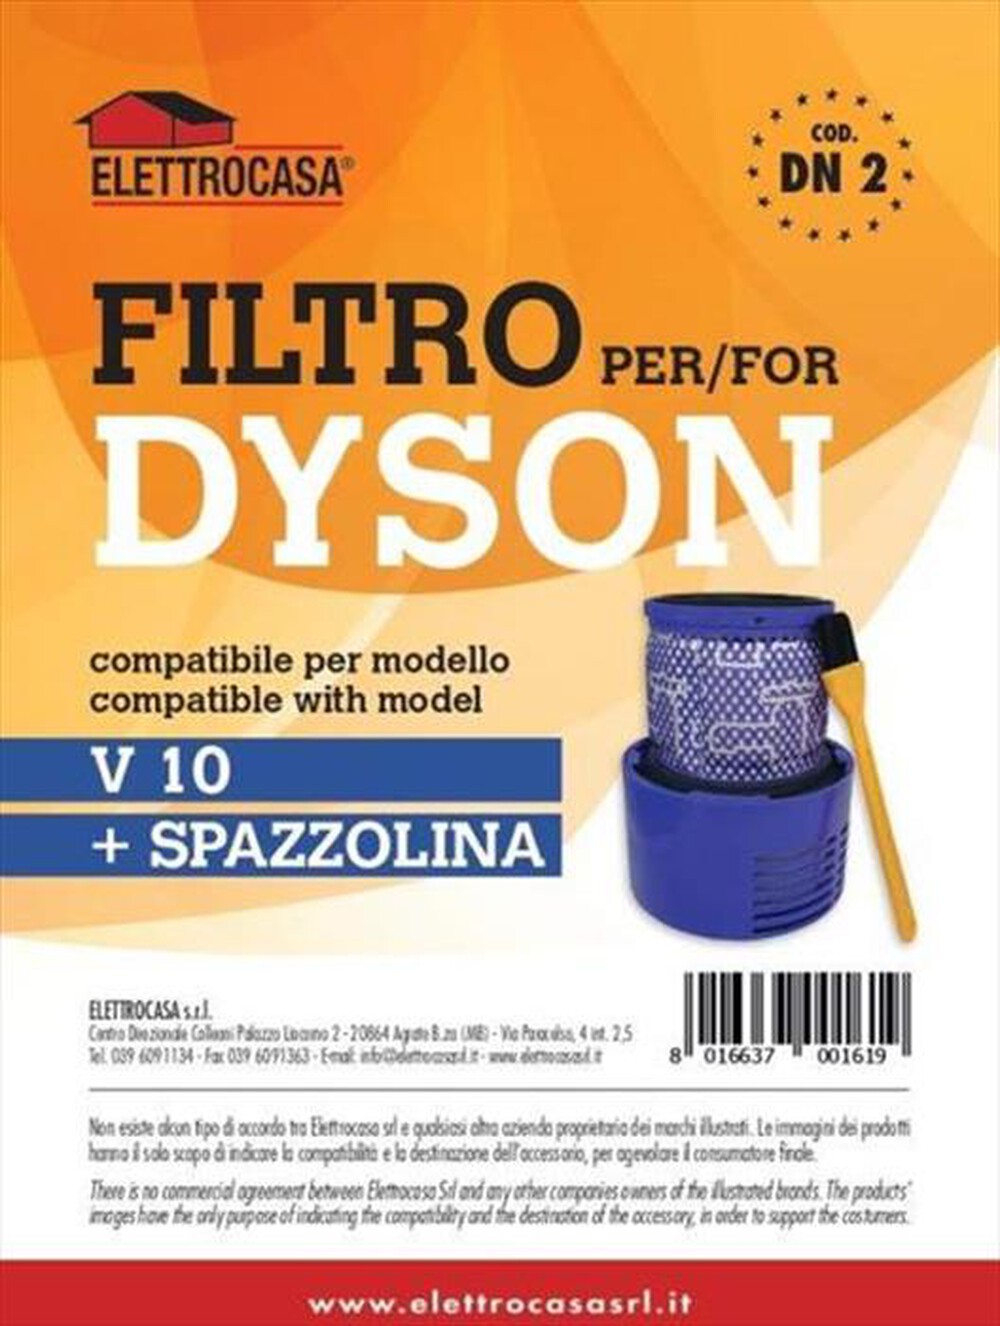 "ELETTROCASA - FILTRO DYSON V10"